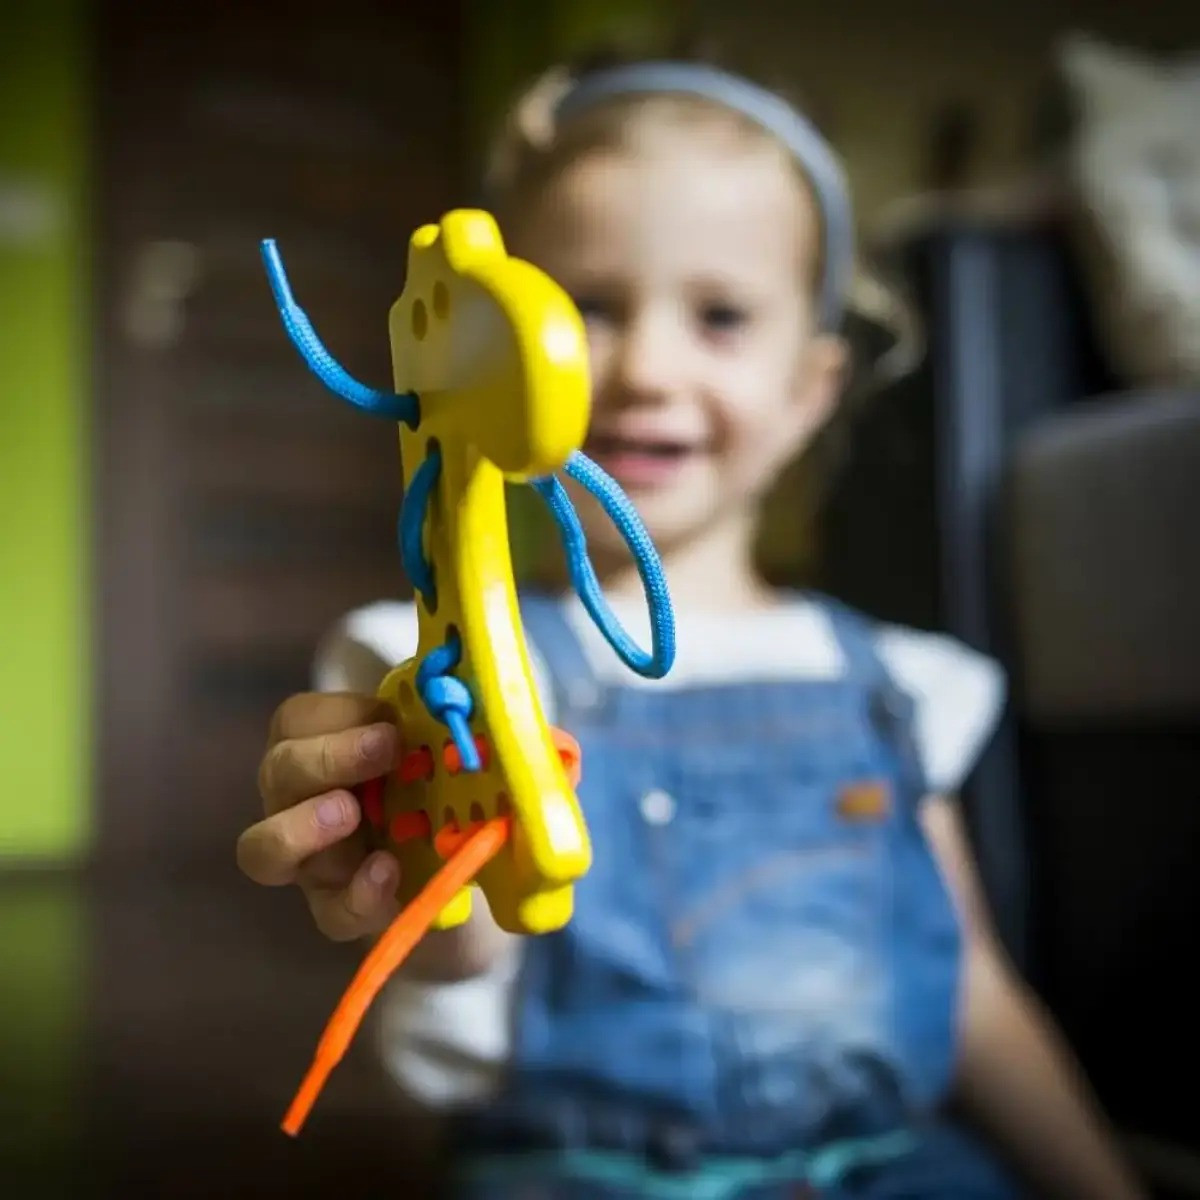 jouets en bois d'inspiration montessori pour enfant de 3 ans - Site FR -  Livraison rapide